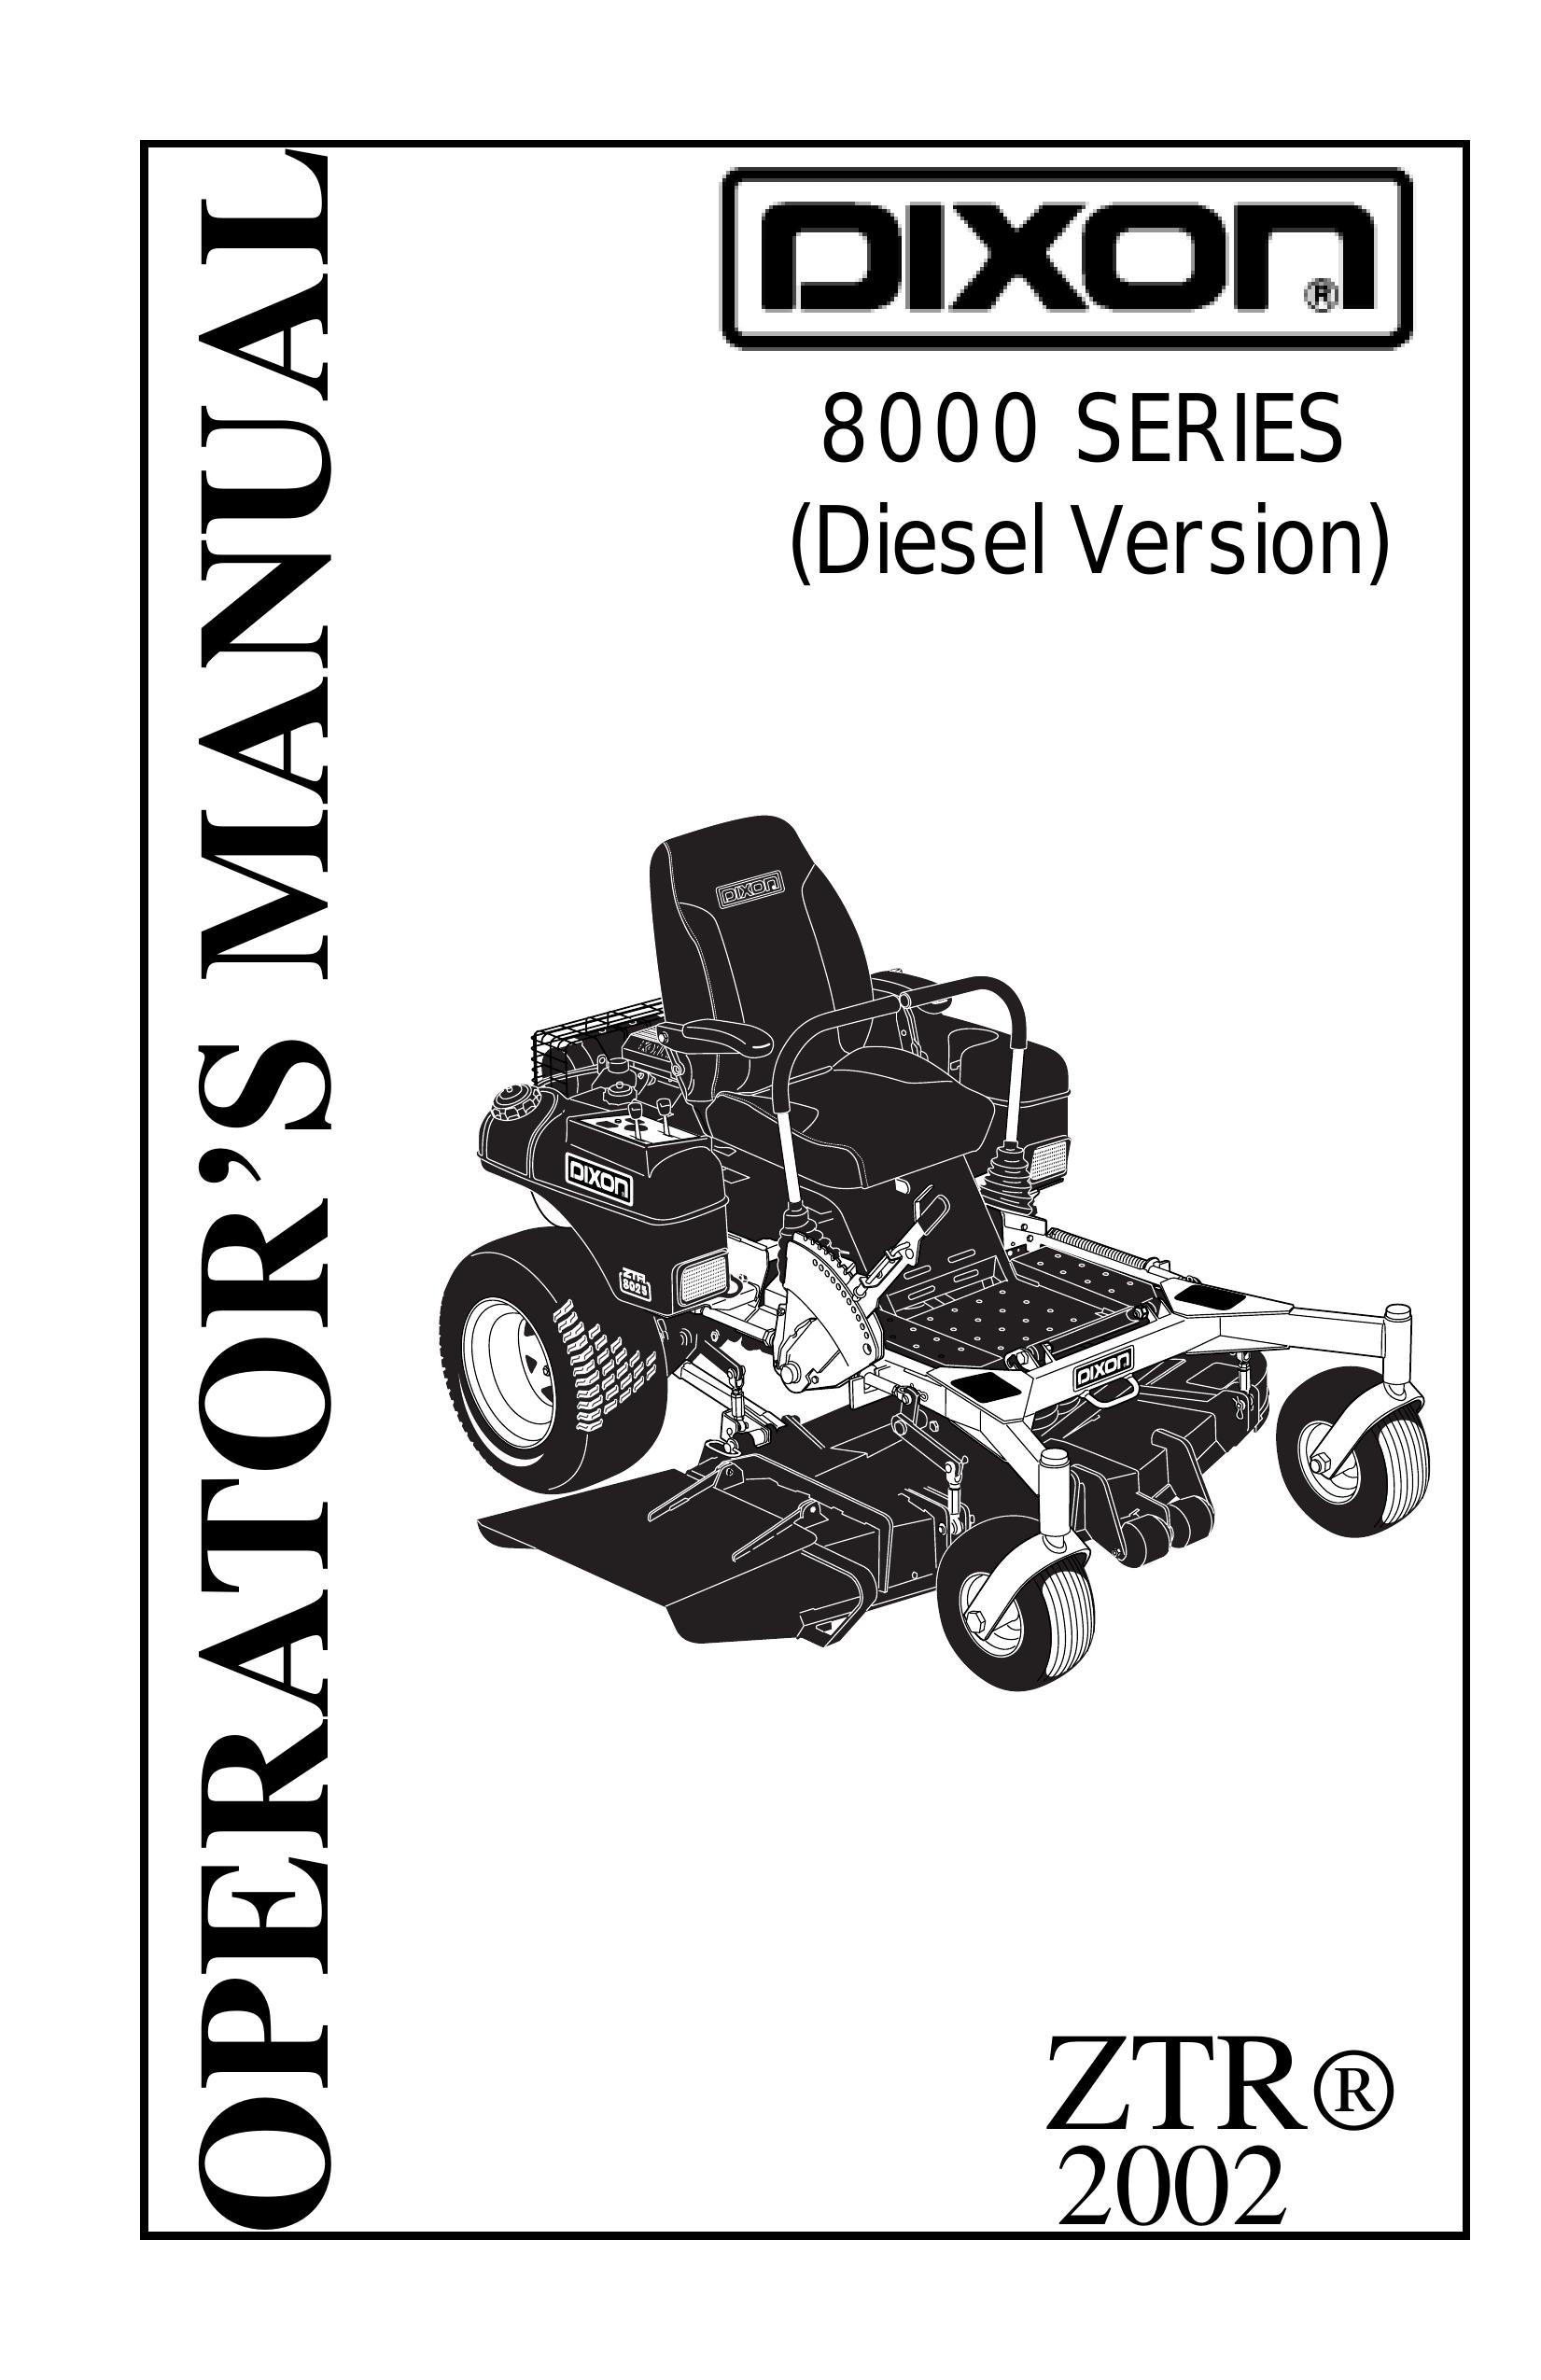 Dixon 13282-0801 Lawn Mower User Manual